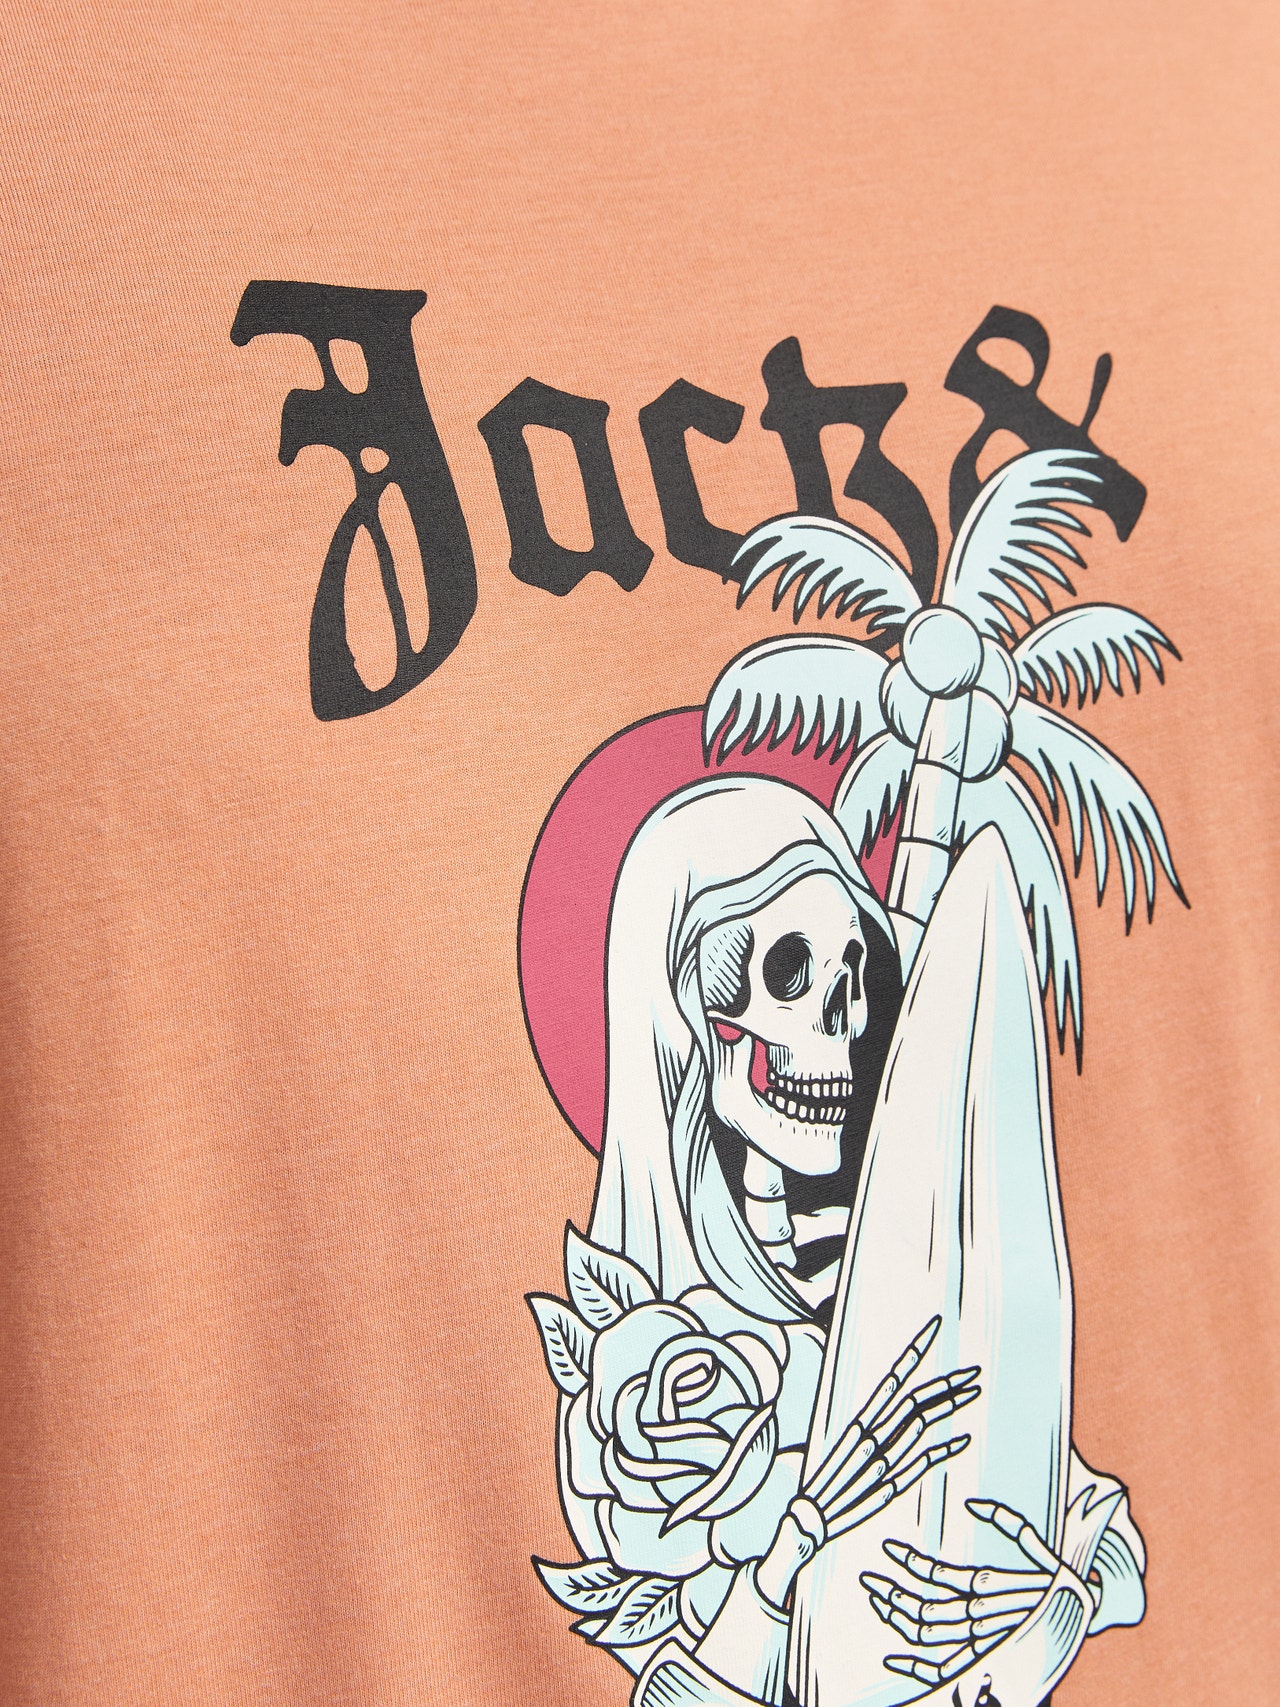 Jack & Jones Plus Size Painettu T-paita -Canyon Sunset - 12261542